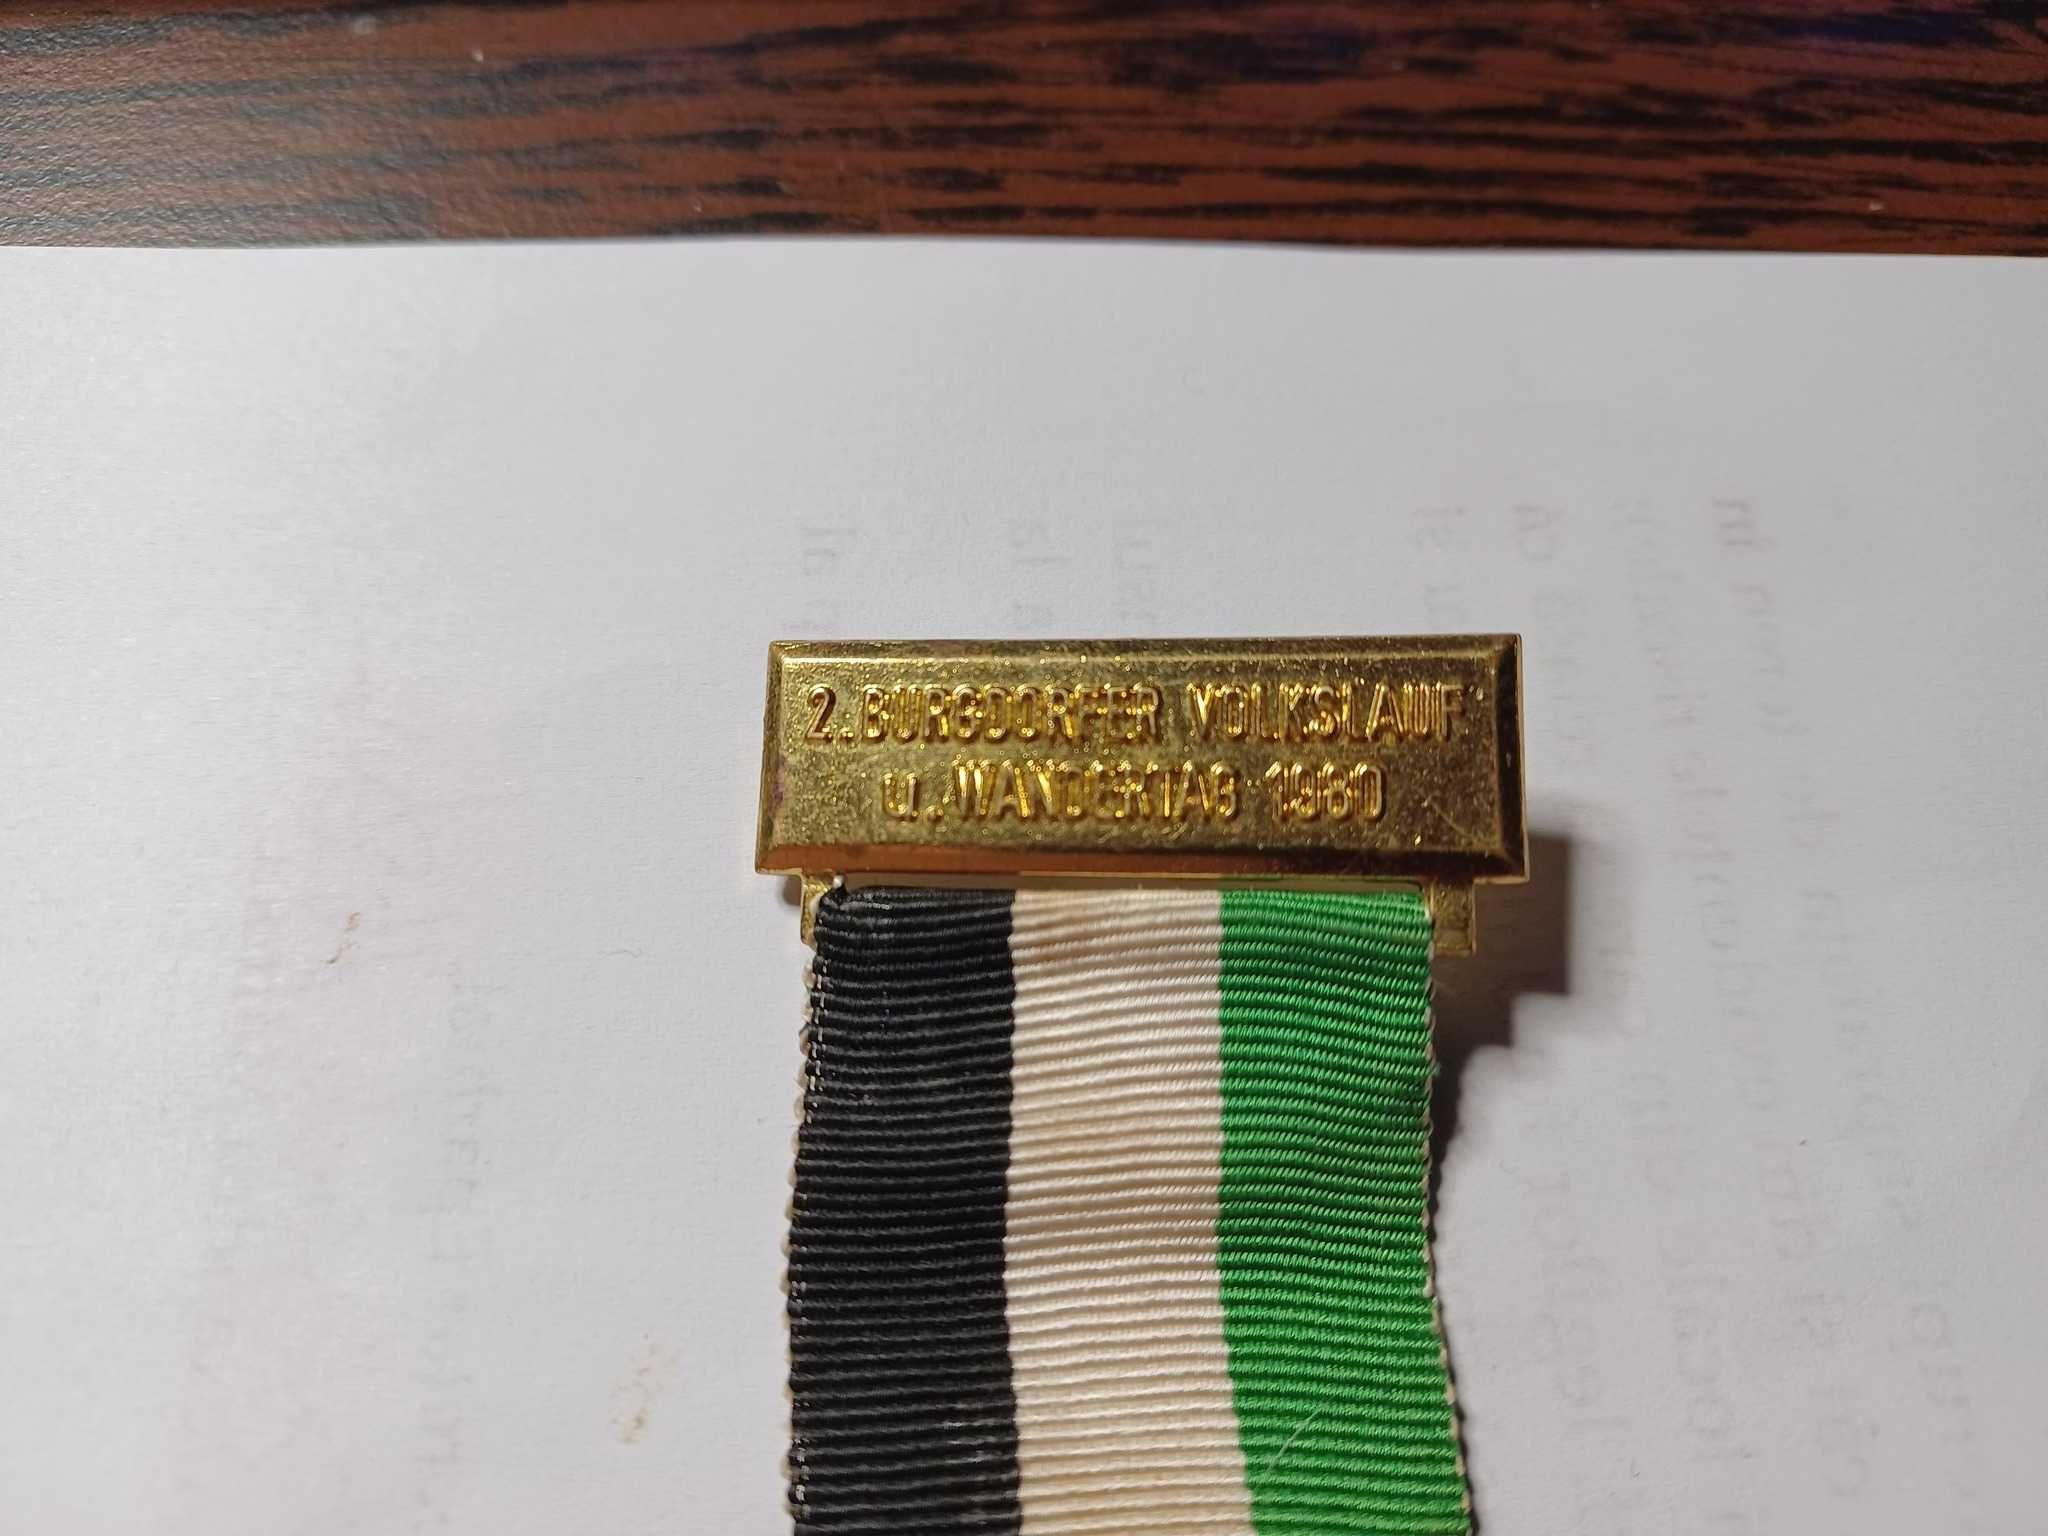 Medalie vintage St. Pankratius 1980